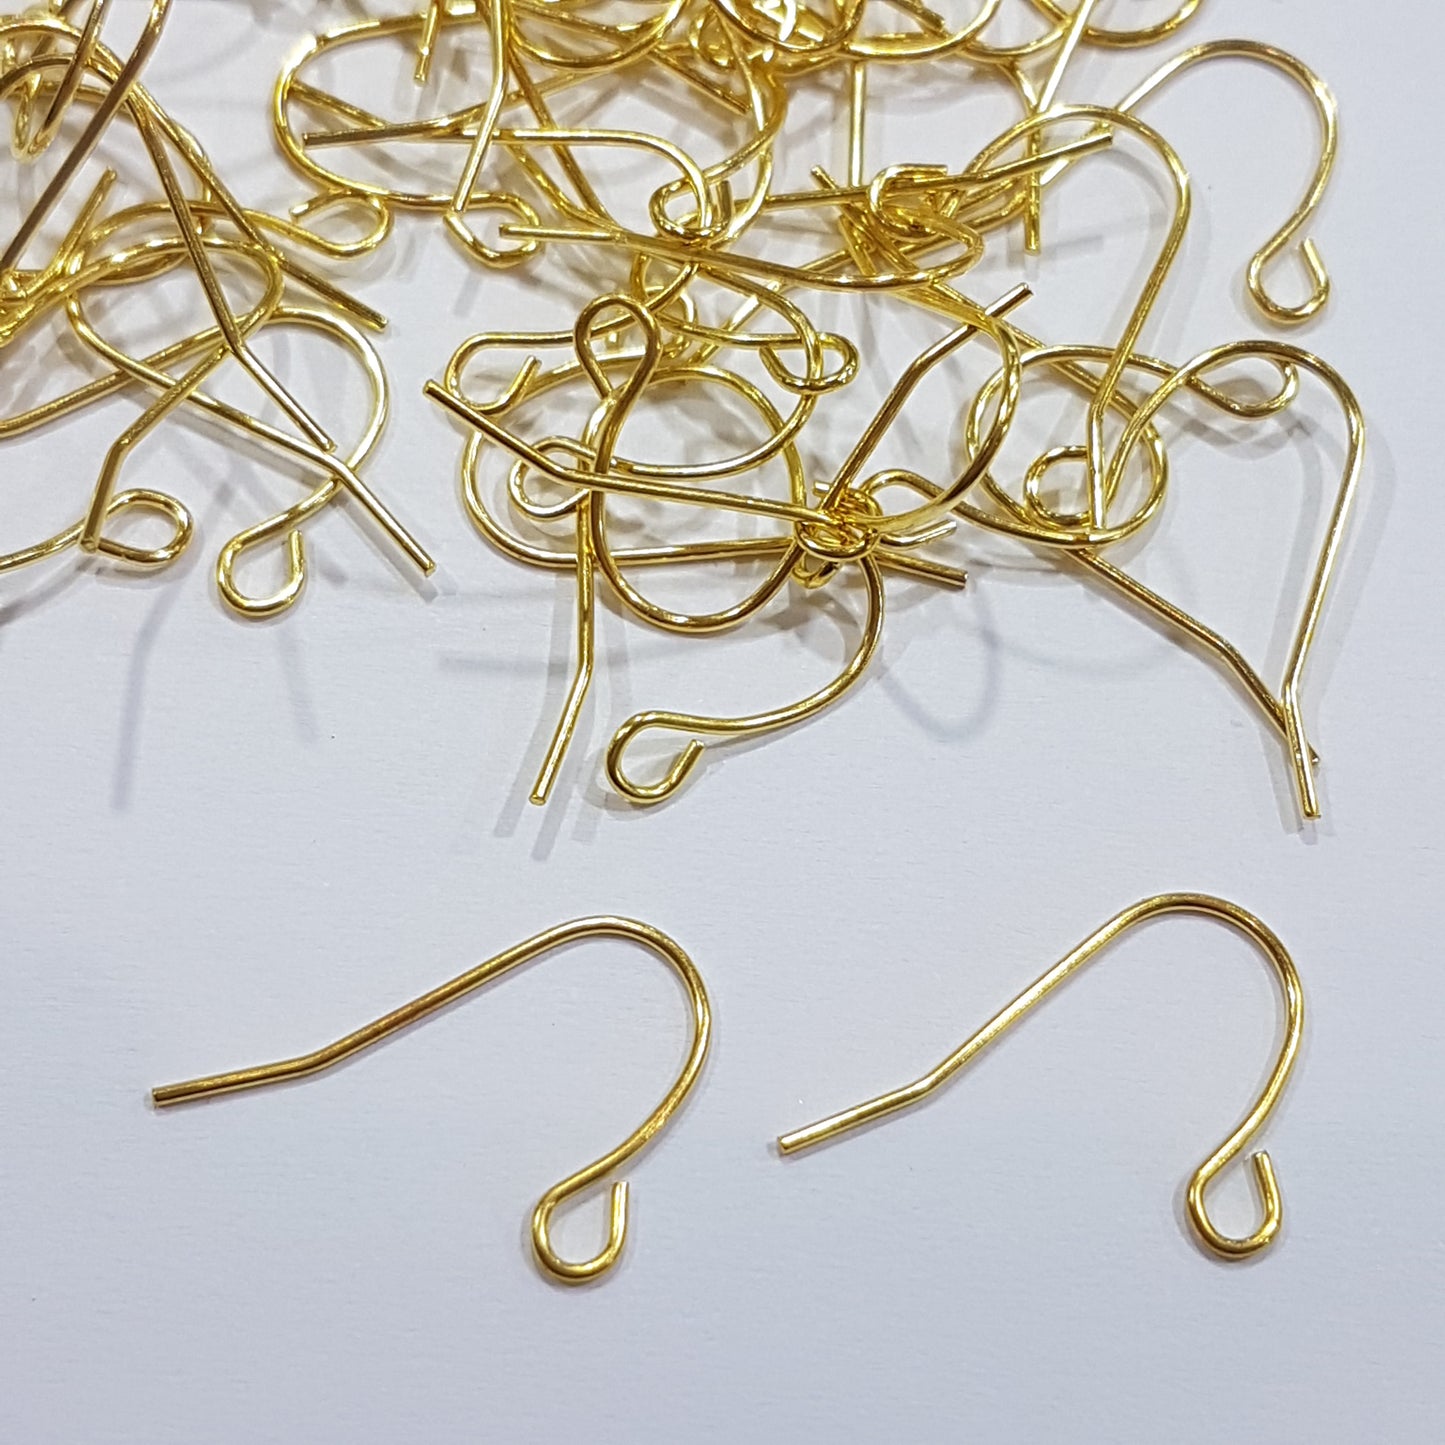 50pc Gold Nickel Free Earring Hooks